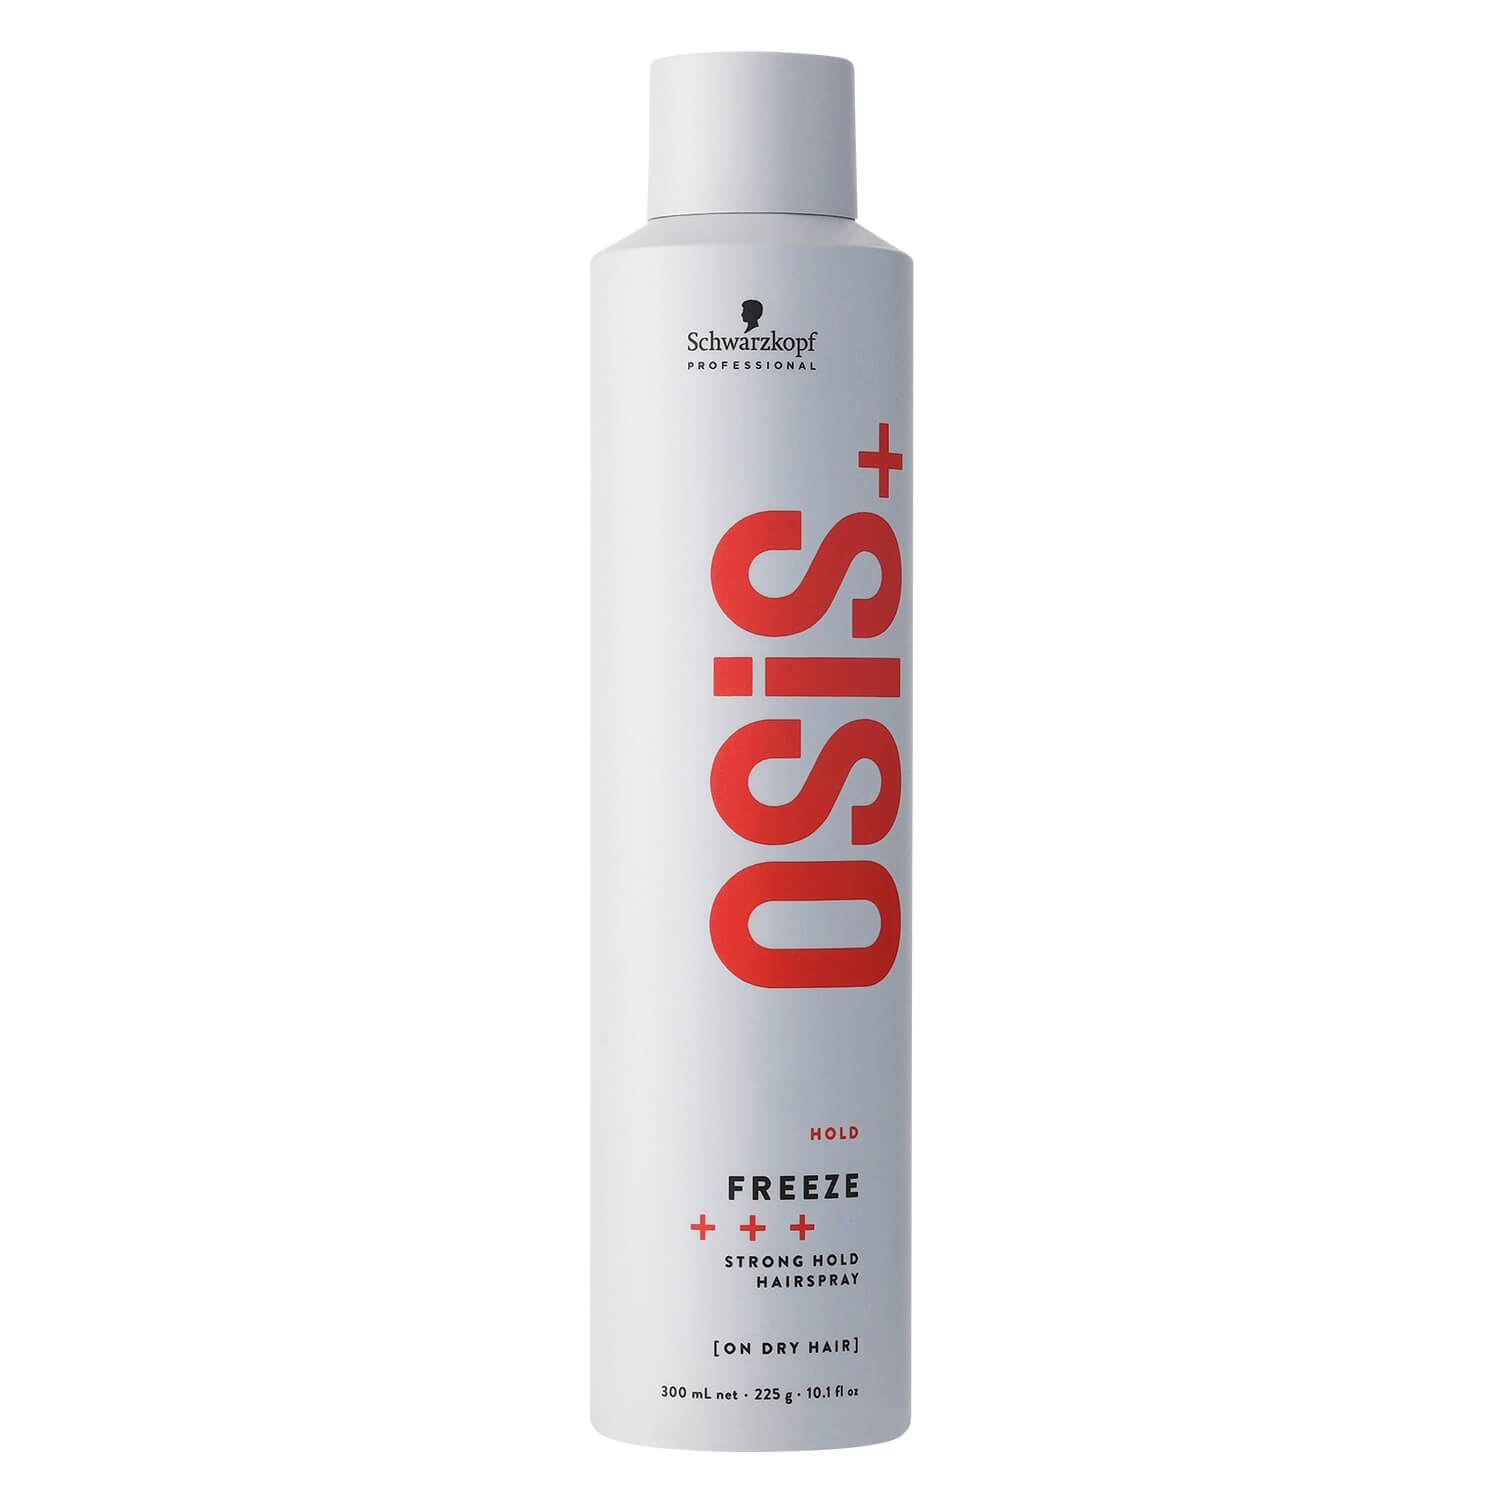 Produktbild von Osis - Freeze Strong Hold Hairspray